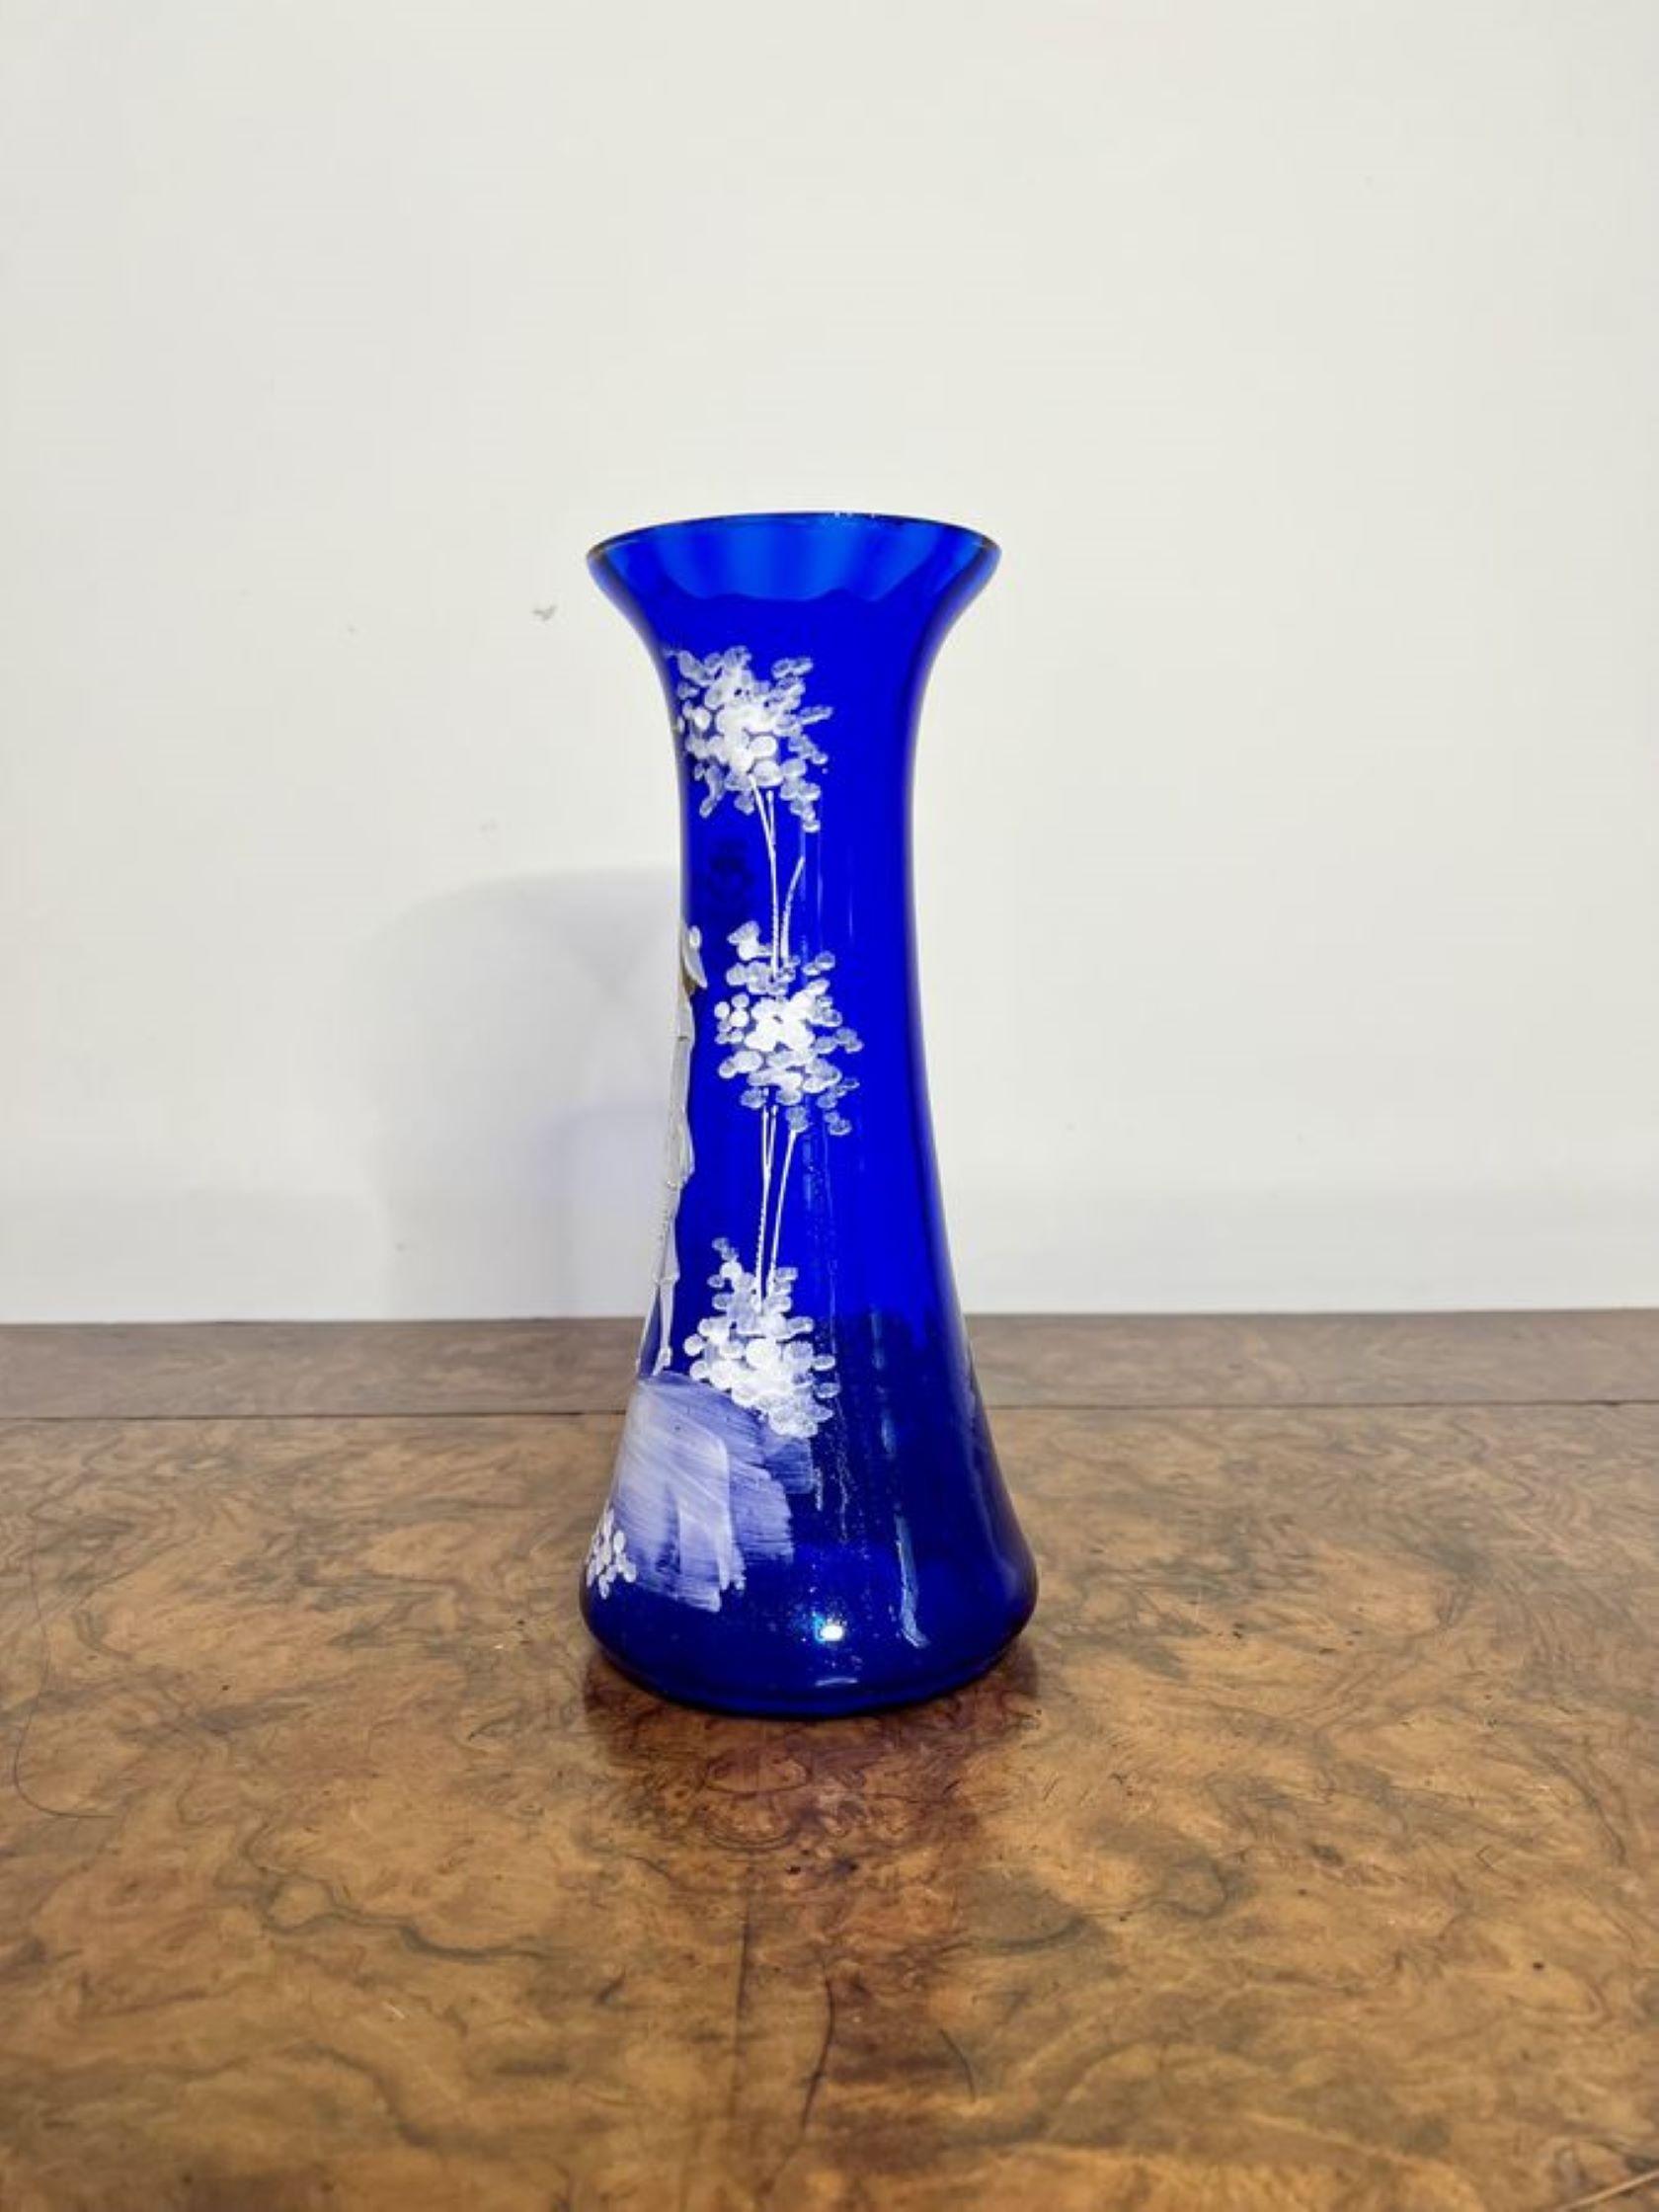 Vase en verre bleu Mary Gregory de qualité étonnante ayant un vase en verre bleu Mary Gregory de qualité étonnante avec une décoration en émail blanc.

D. 1890